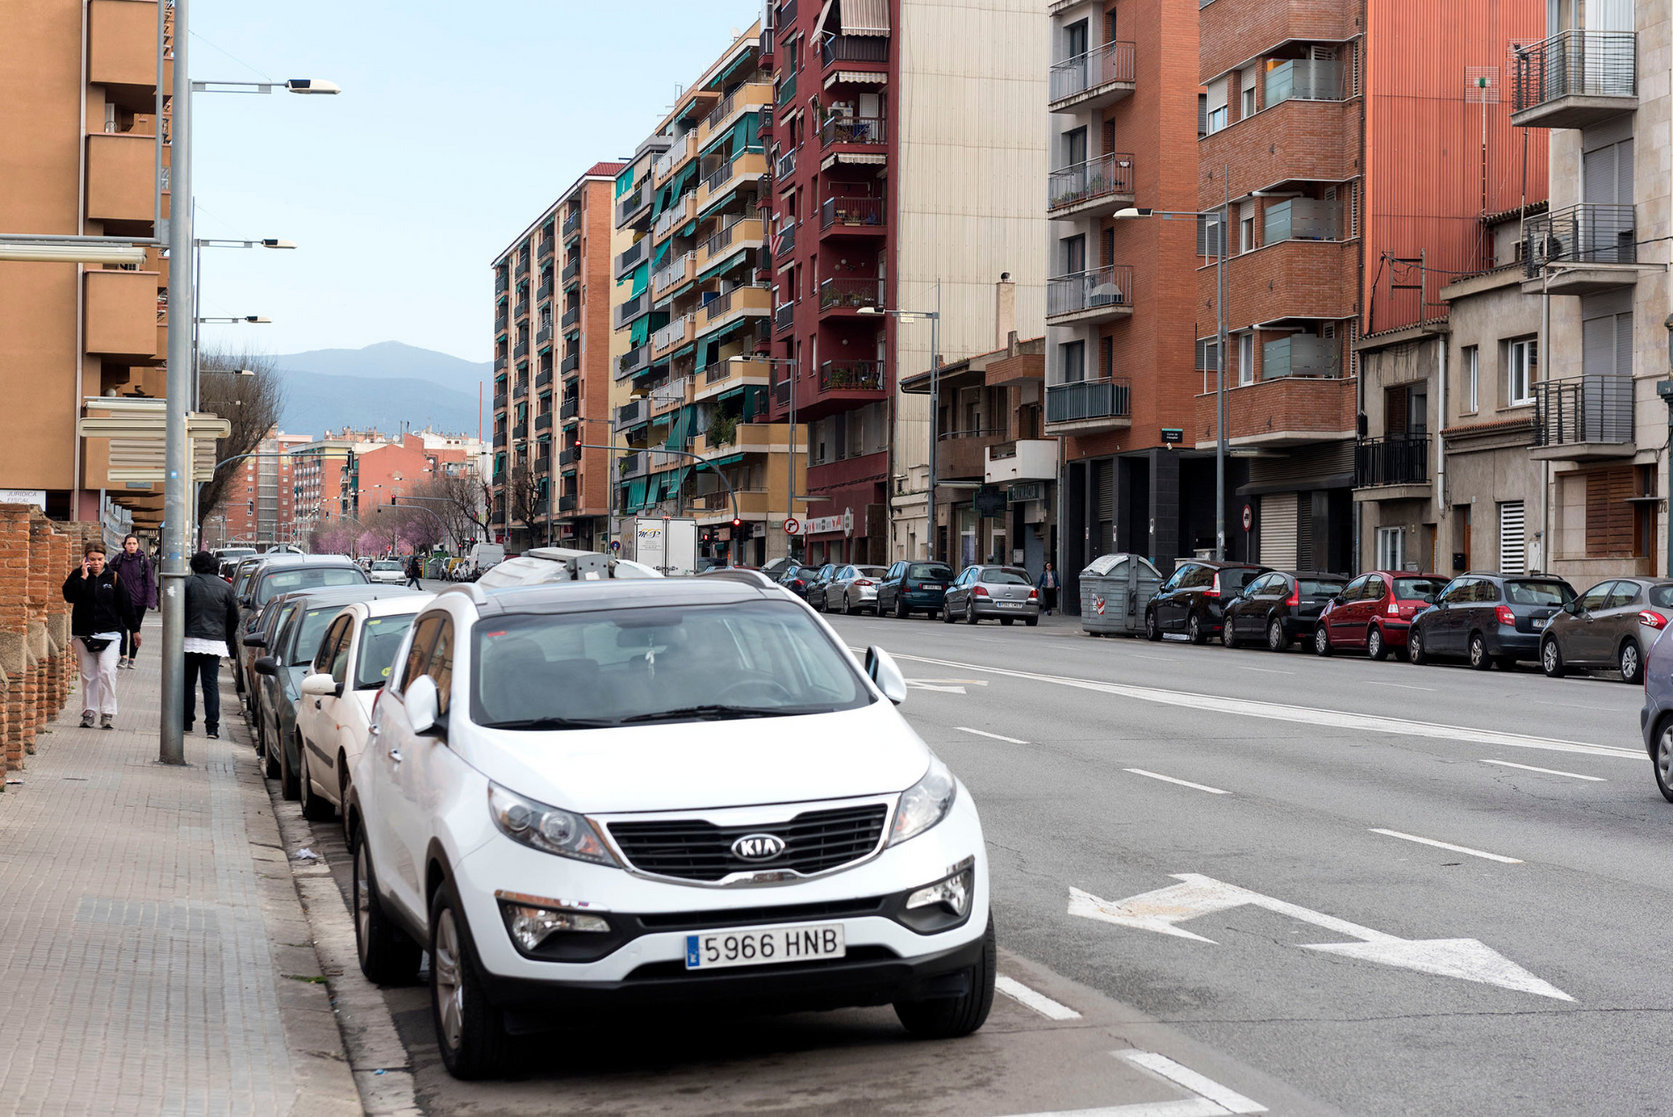 Una de les principals inversions previstes per a aquest any és la reforma del tram nord del carrer Girona